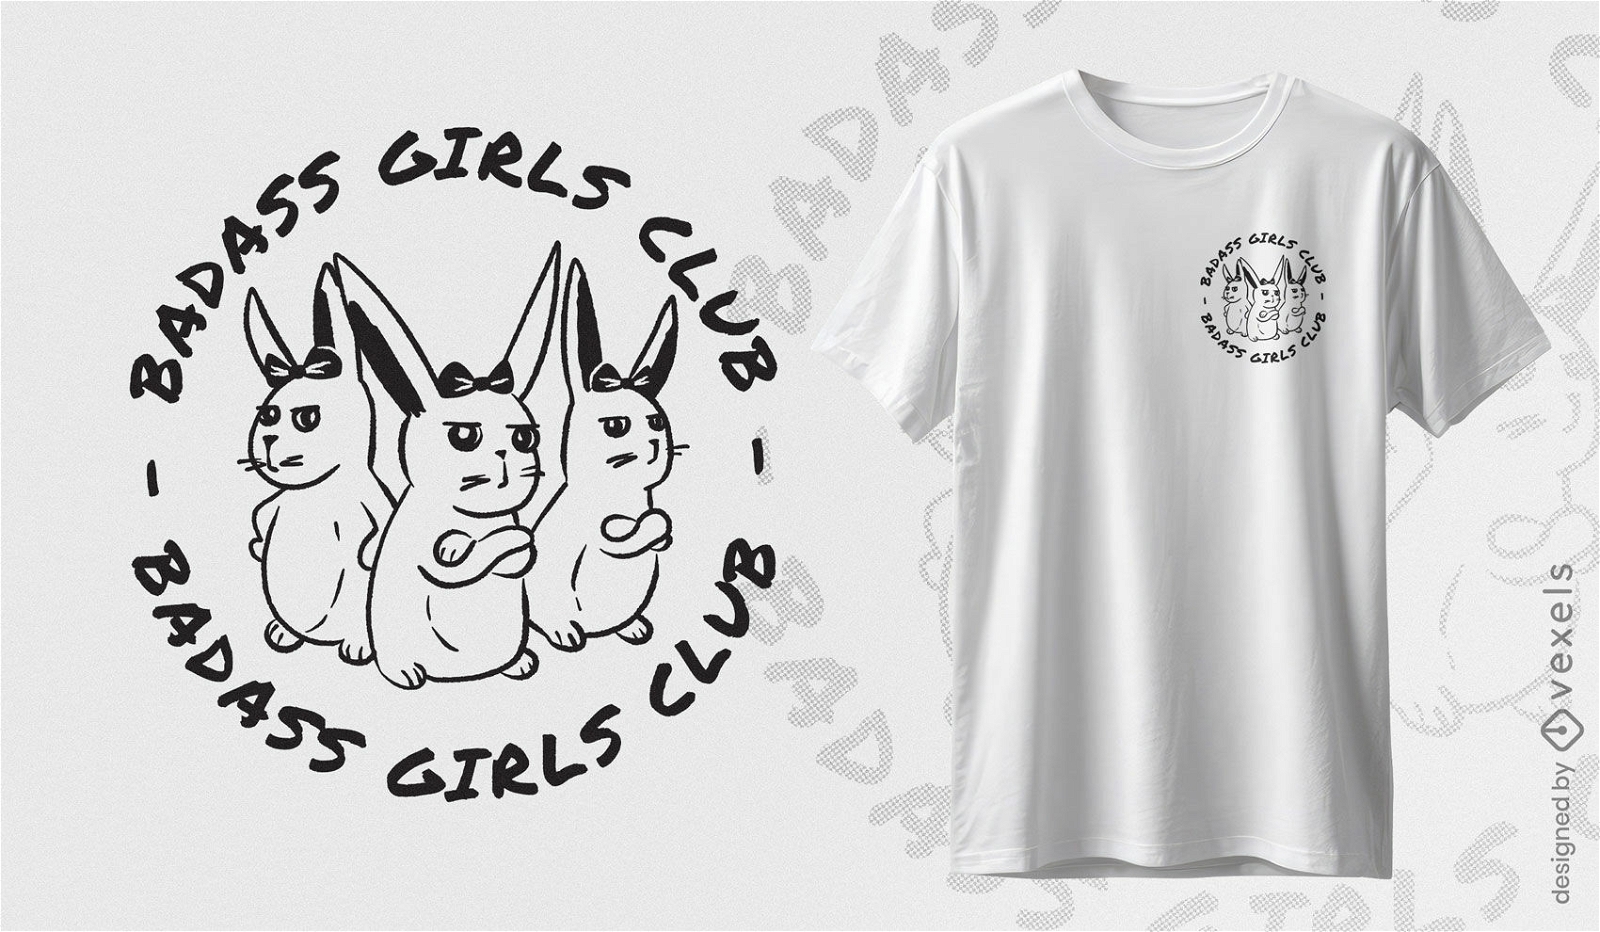 Diseño de camiseta de conejitas del club de chicas rudos.